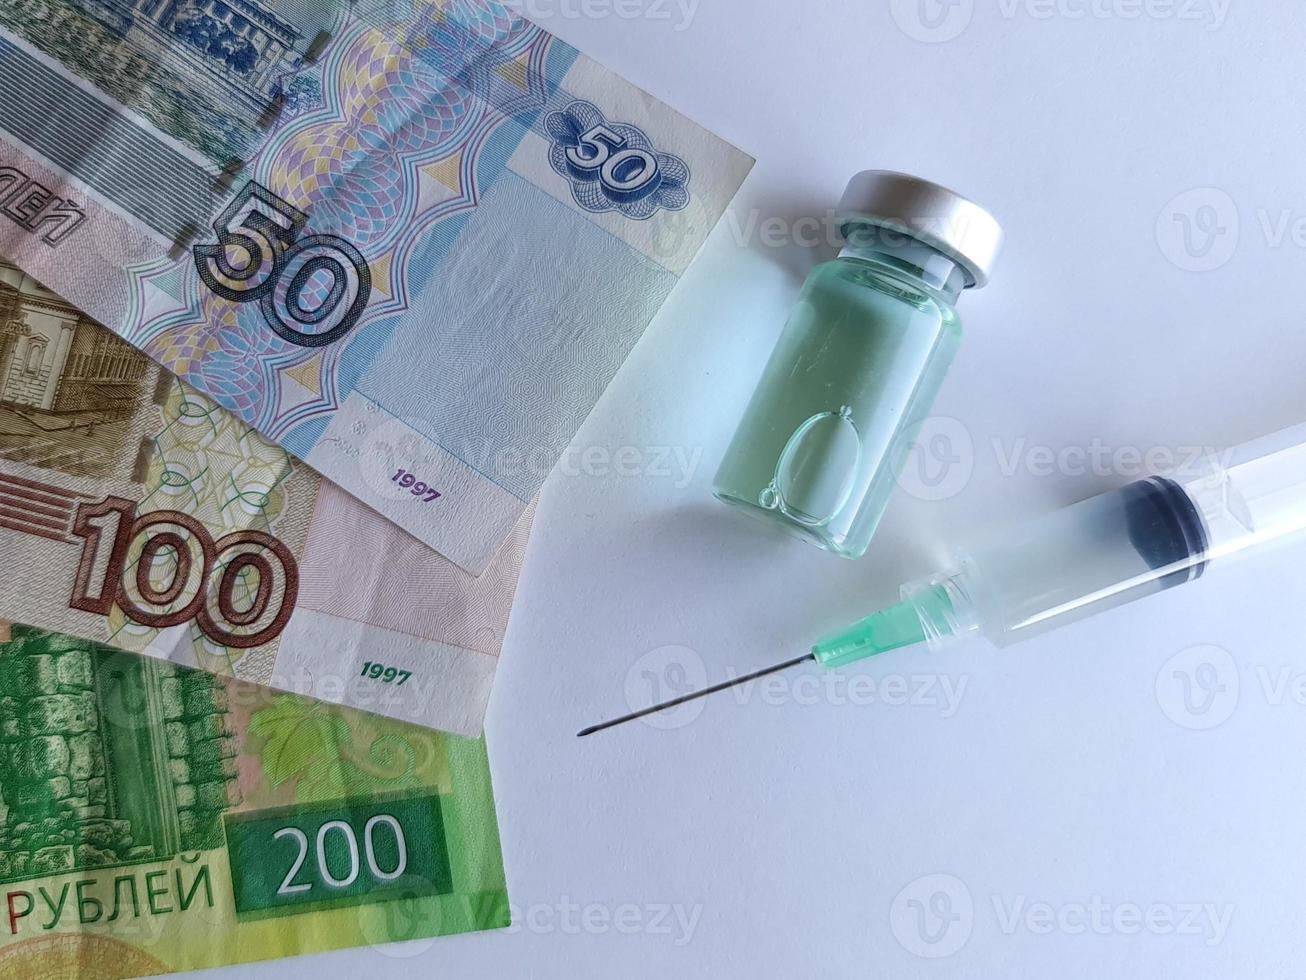 Investitionen in Gesundheitsversorgung und Impfsystem in Russland foto